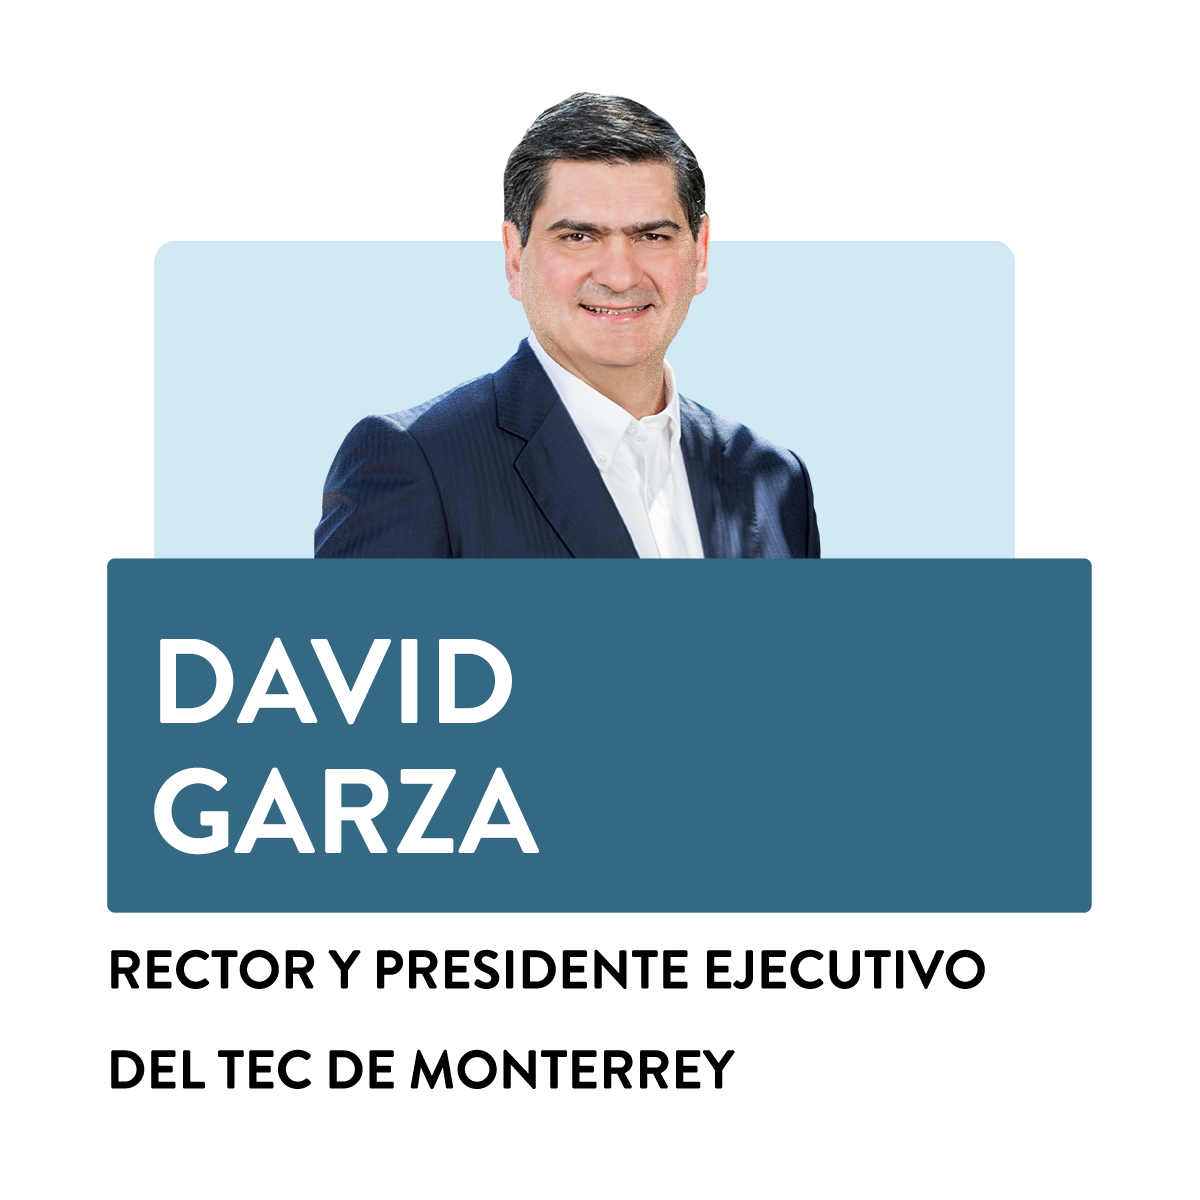 David Garza